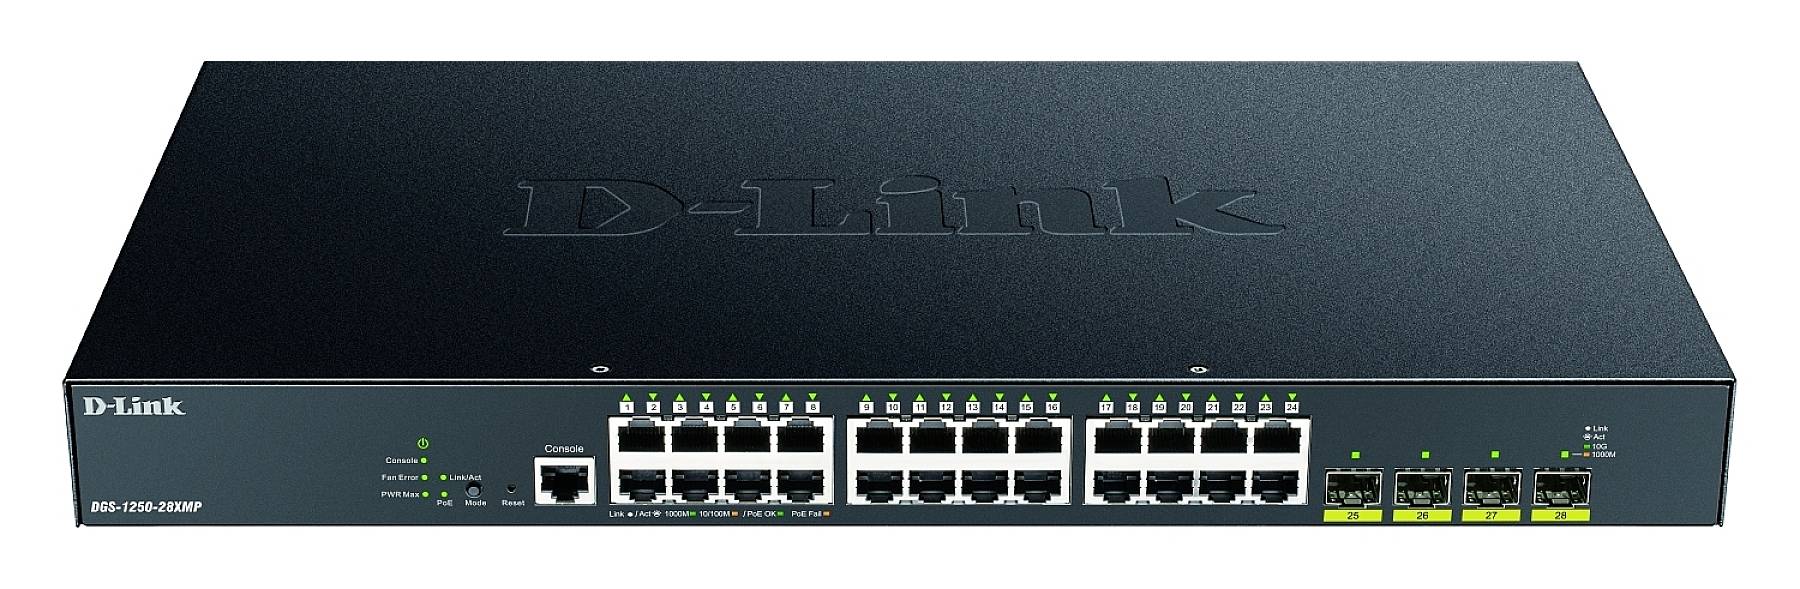 D-LINK 28-Port Smart Managed PoE+ Gigabit Switch 4x 10G, dlink|green 3.0